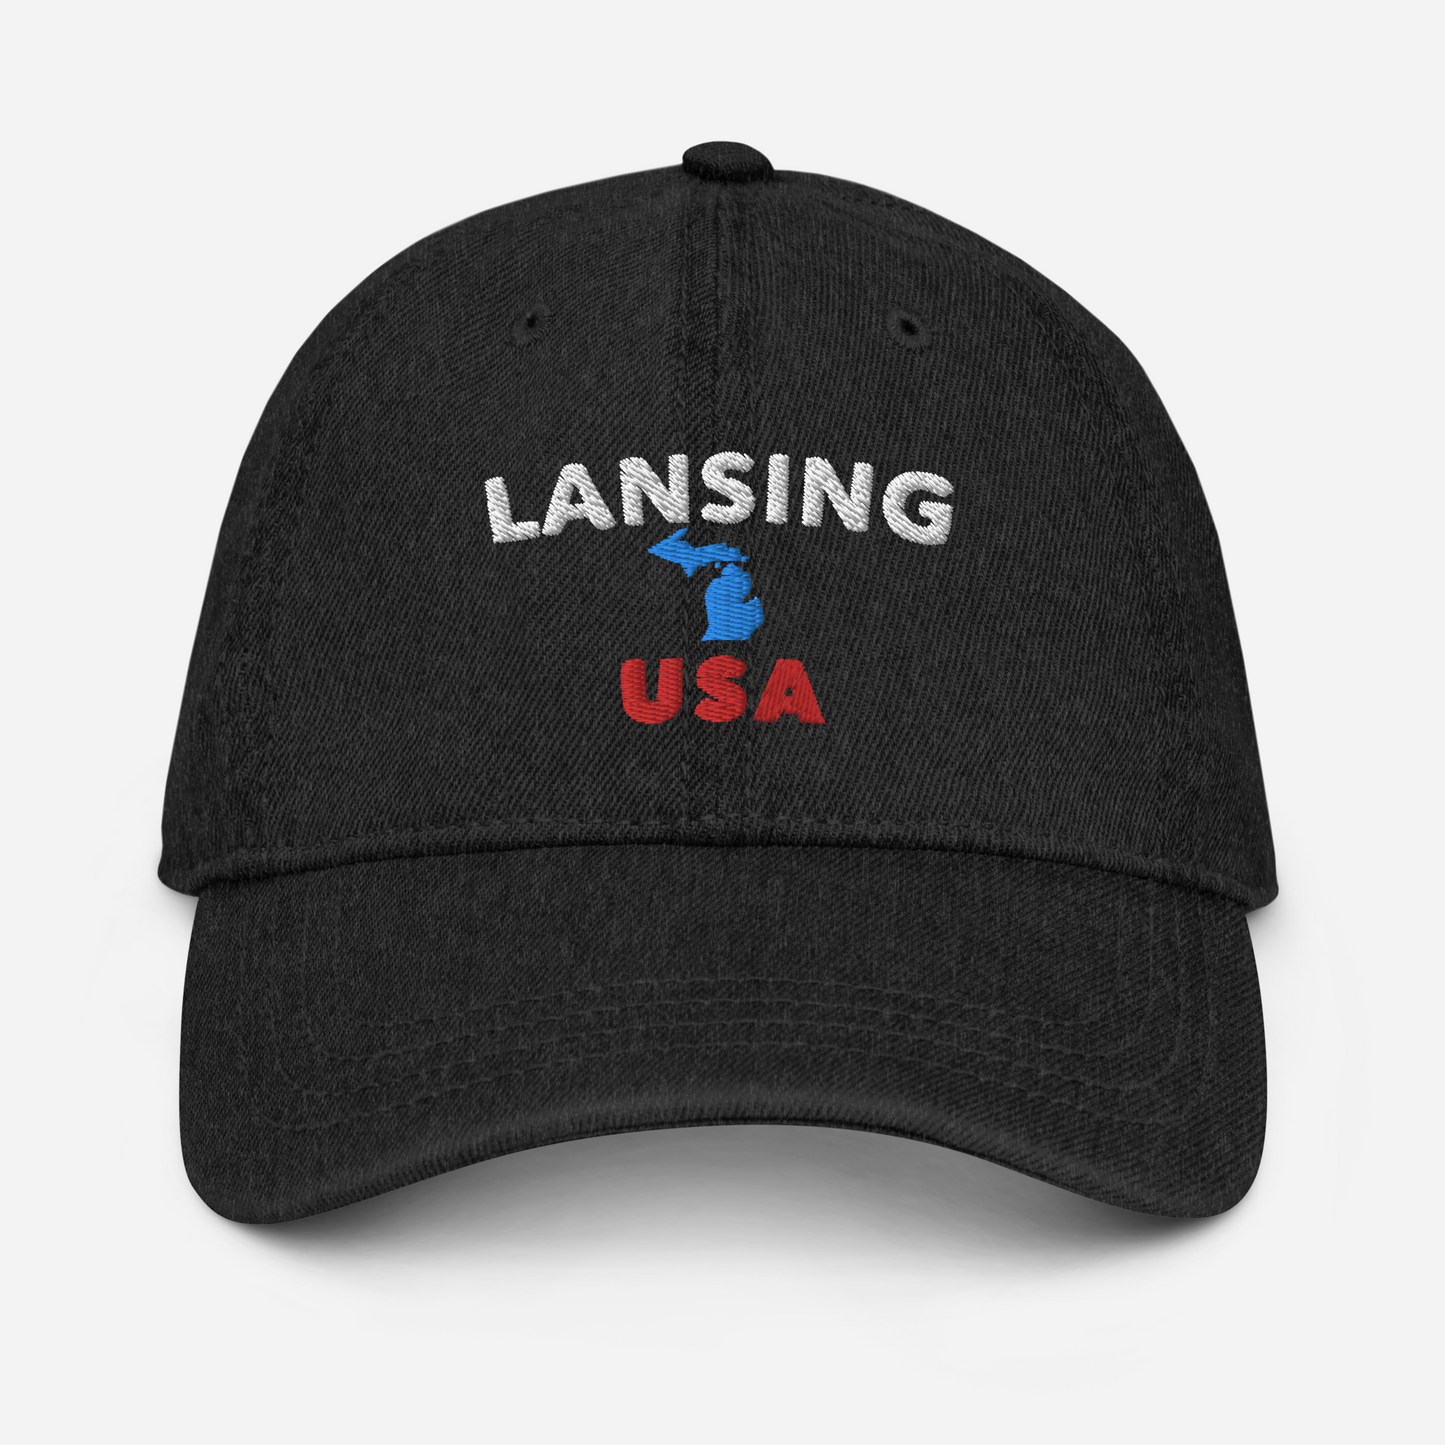 'Lansing USA' Denim Baseball Cap (w/ Michigan Outline)